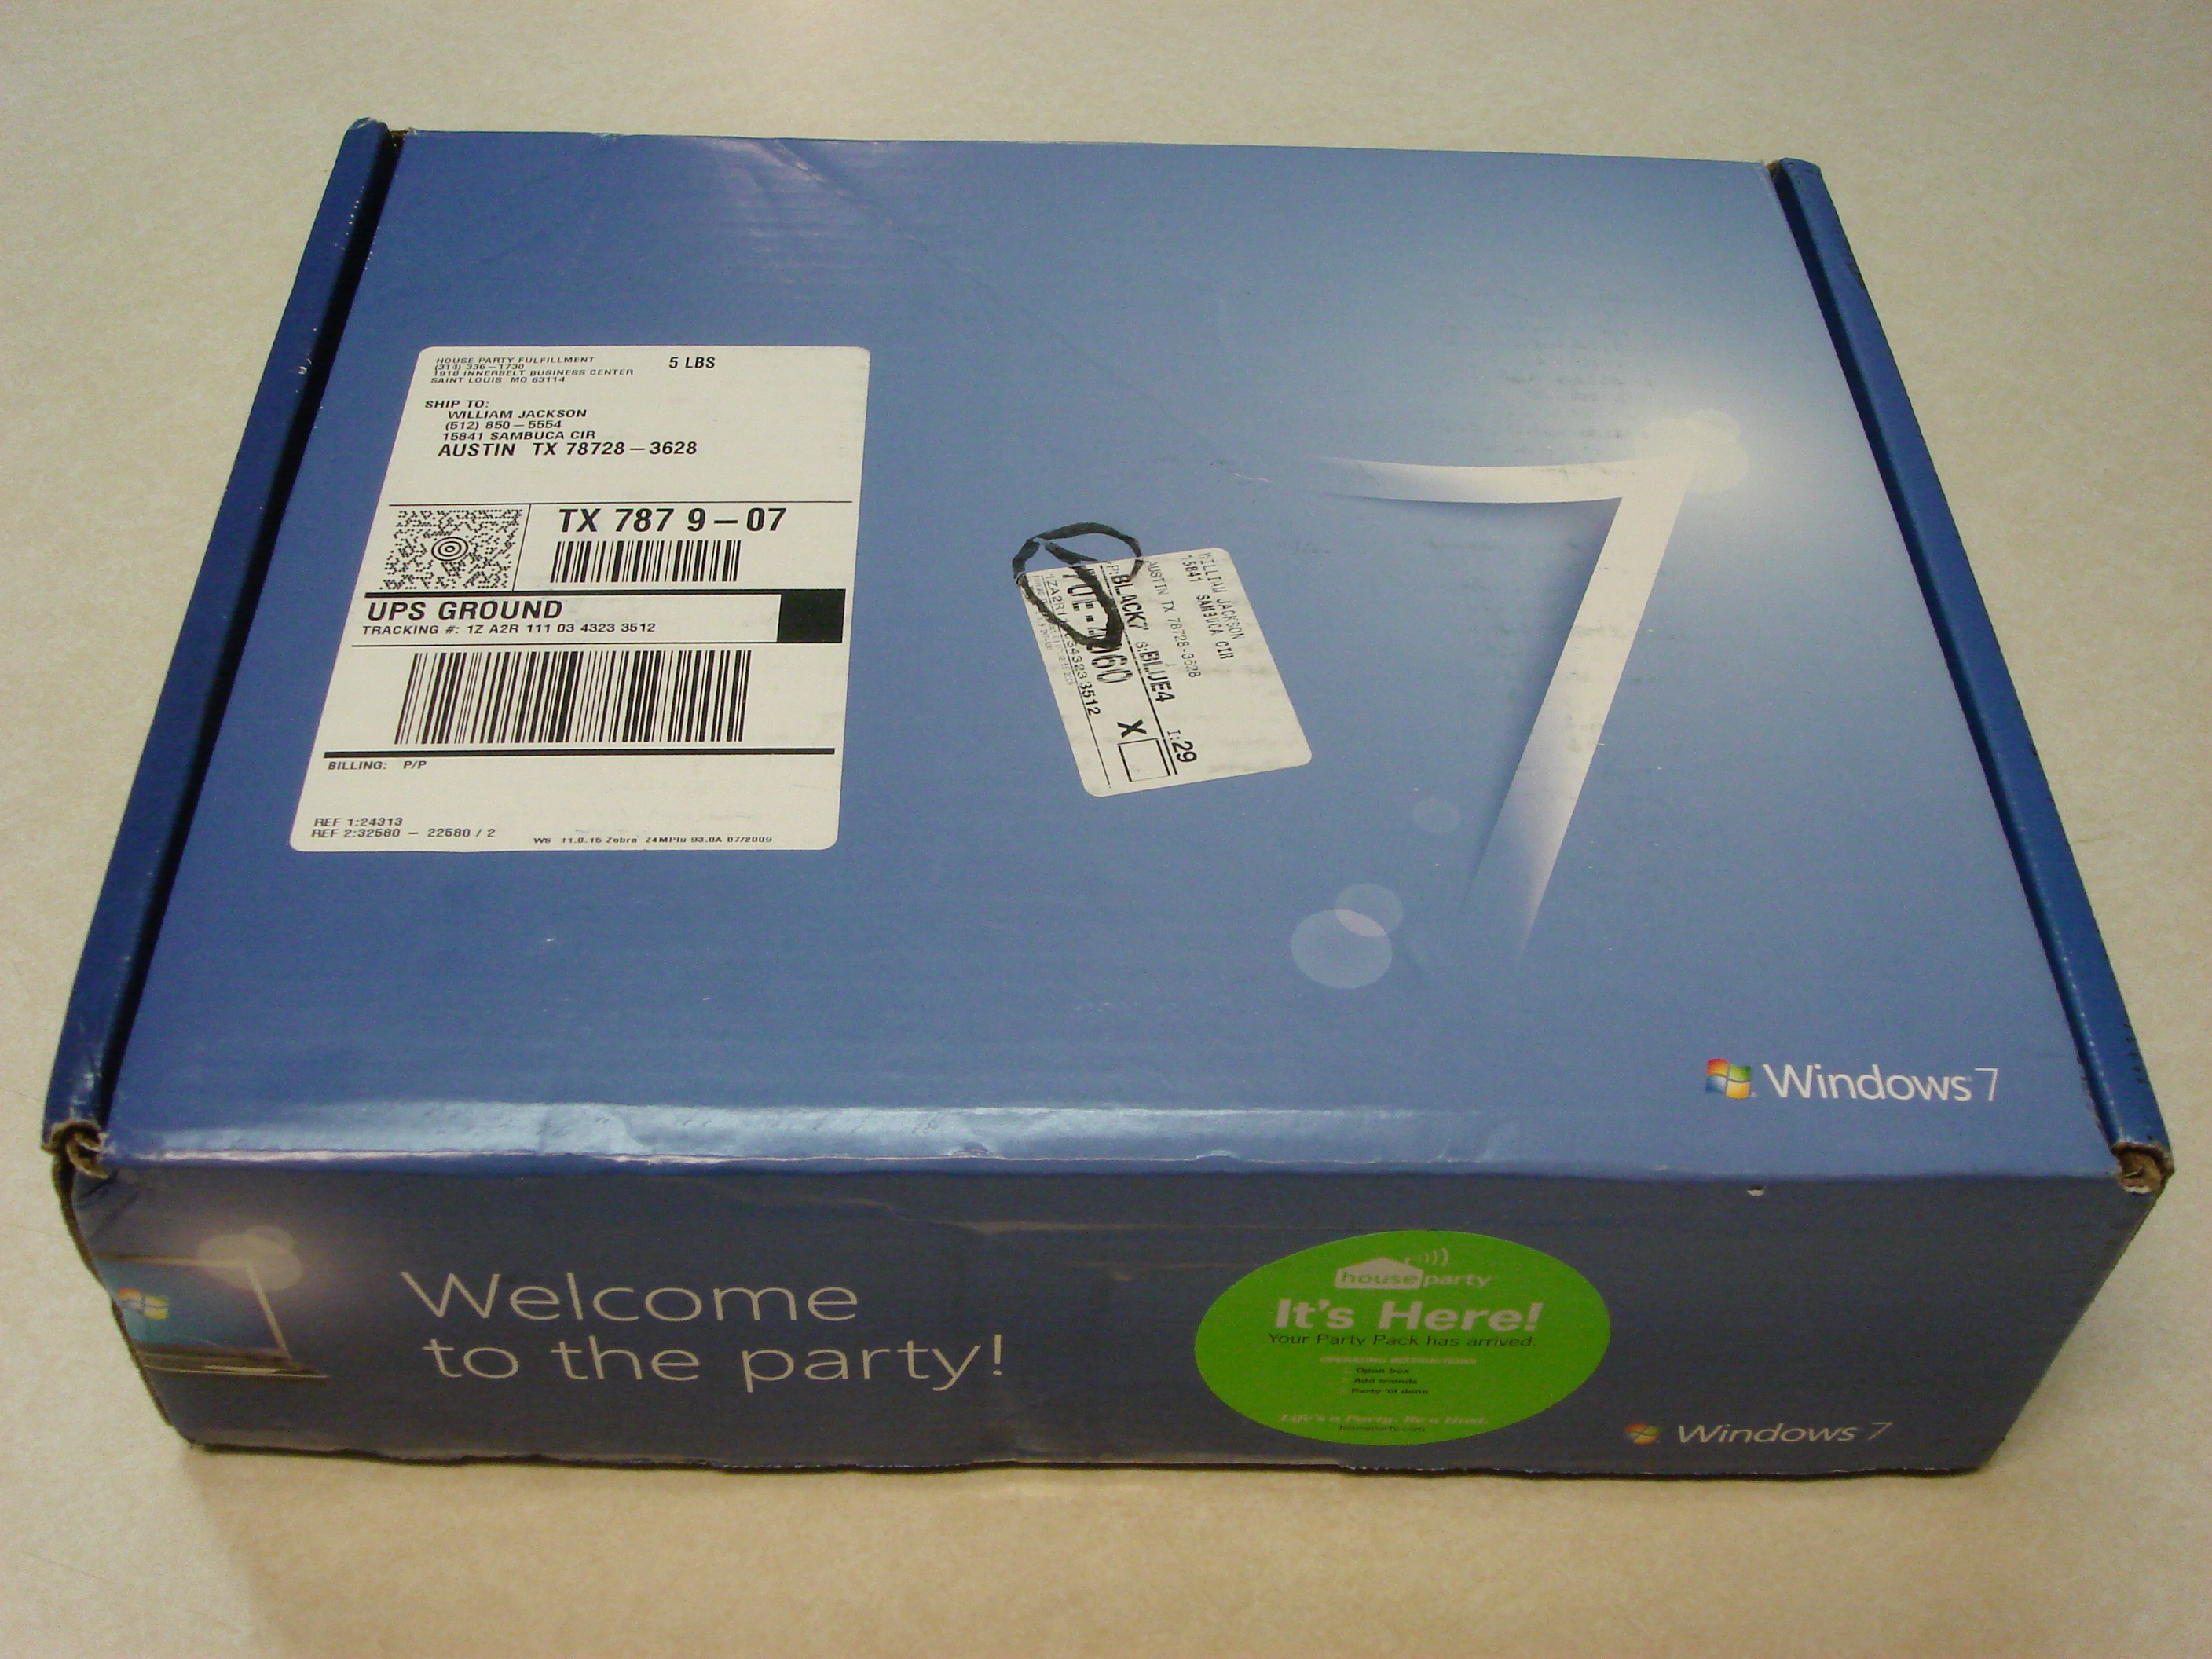 Windows 7 Box